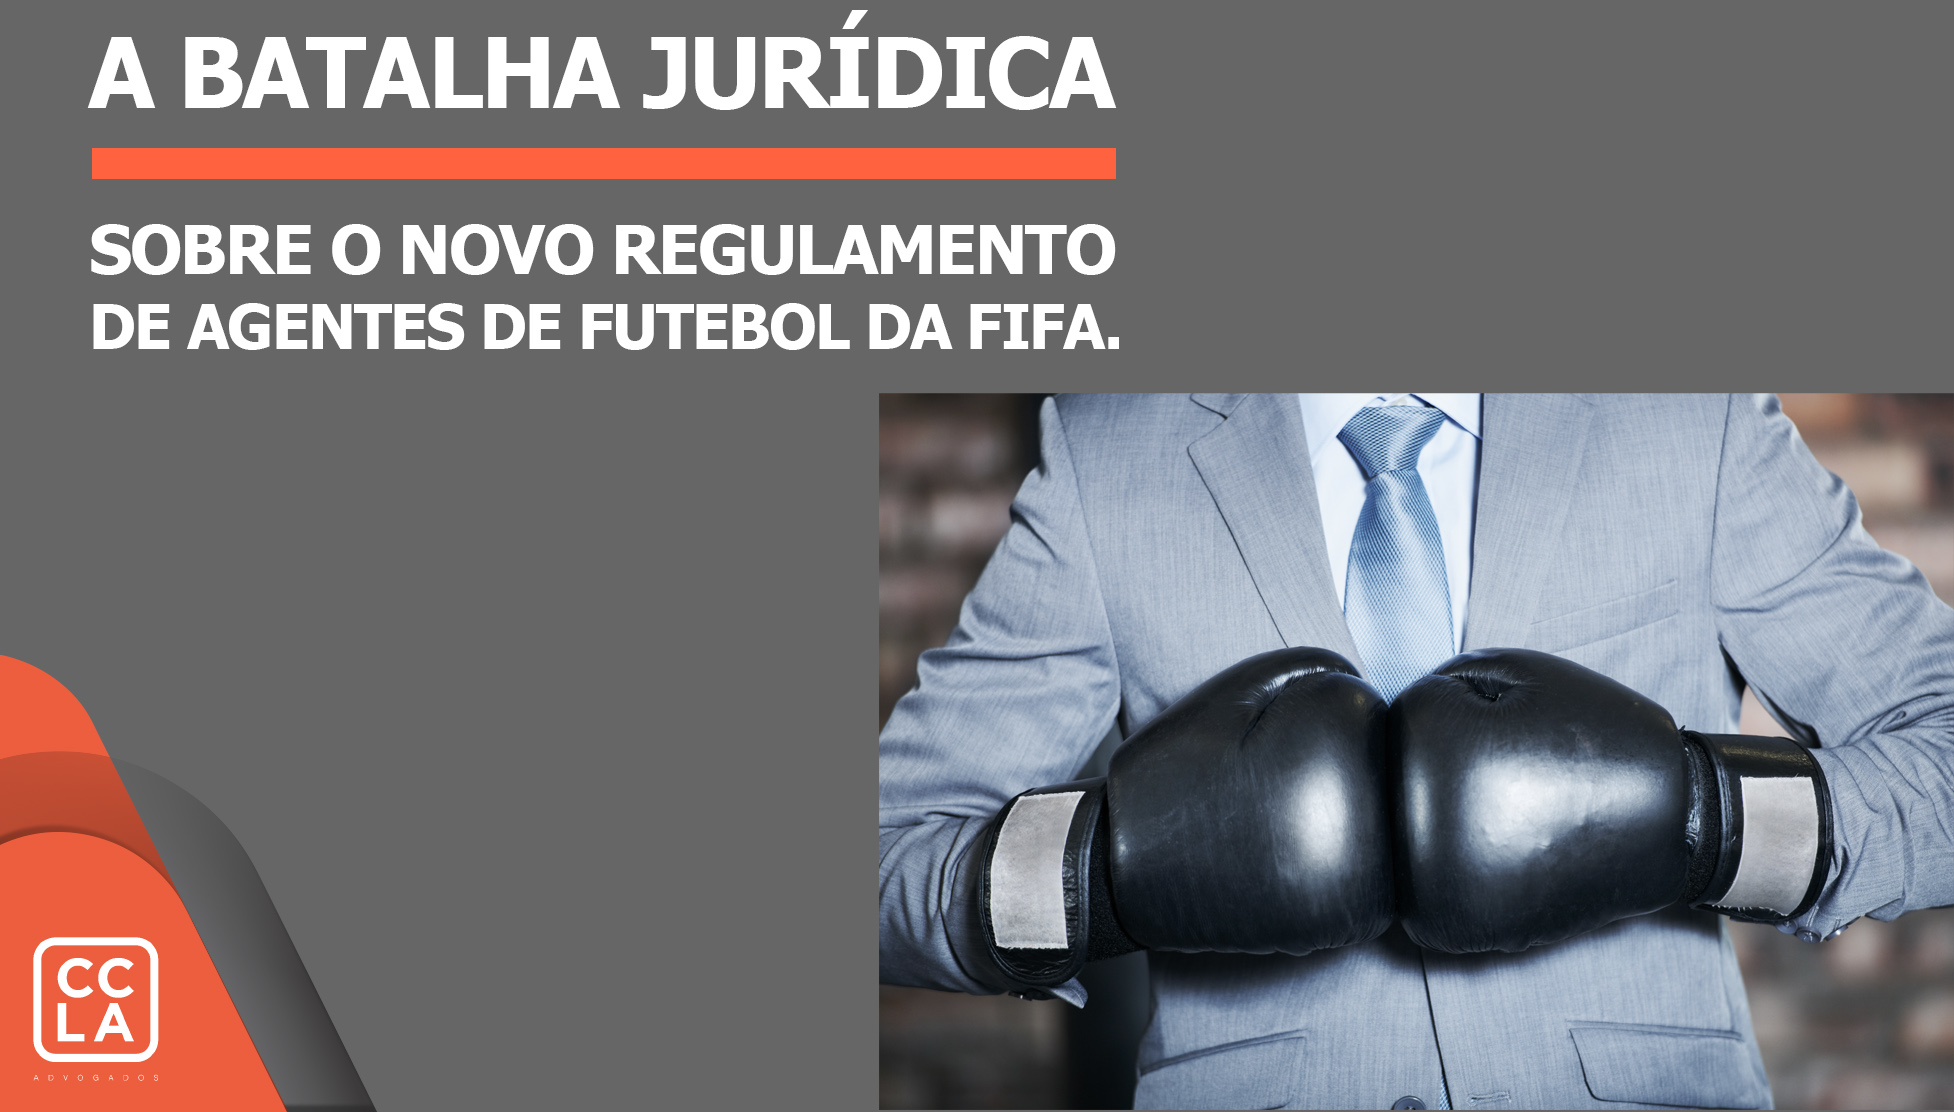 A menos de uma semana antes de o novo Regulamento de Agentes de Futebol entrar em vigor, a FIFA enfrenta uma batalha jurídica com a maioria dos agentes do jogo.